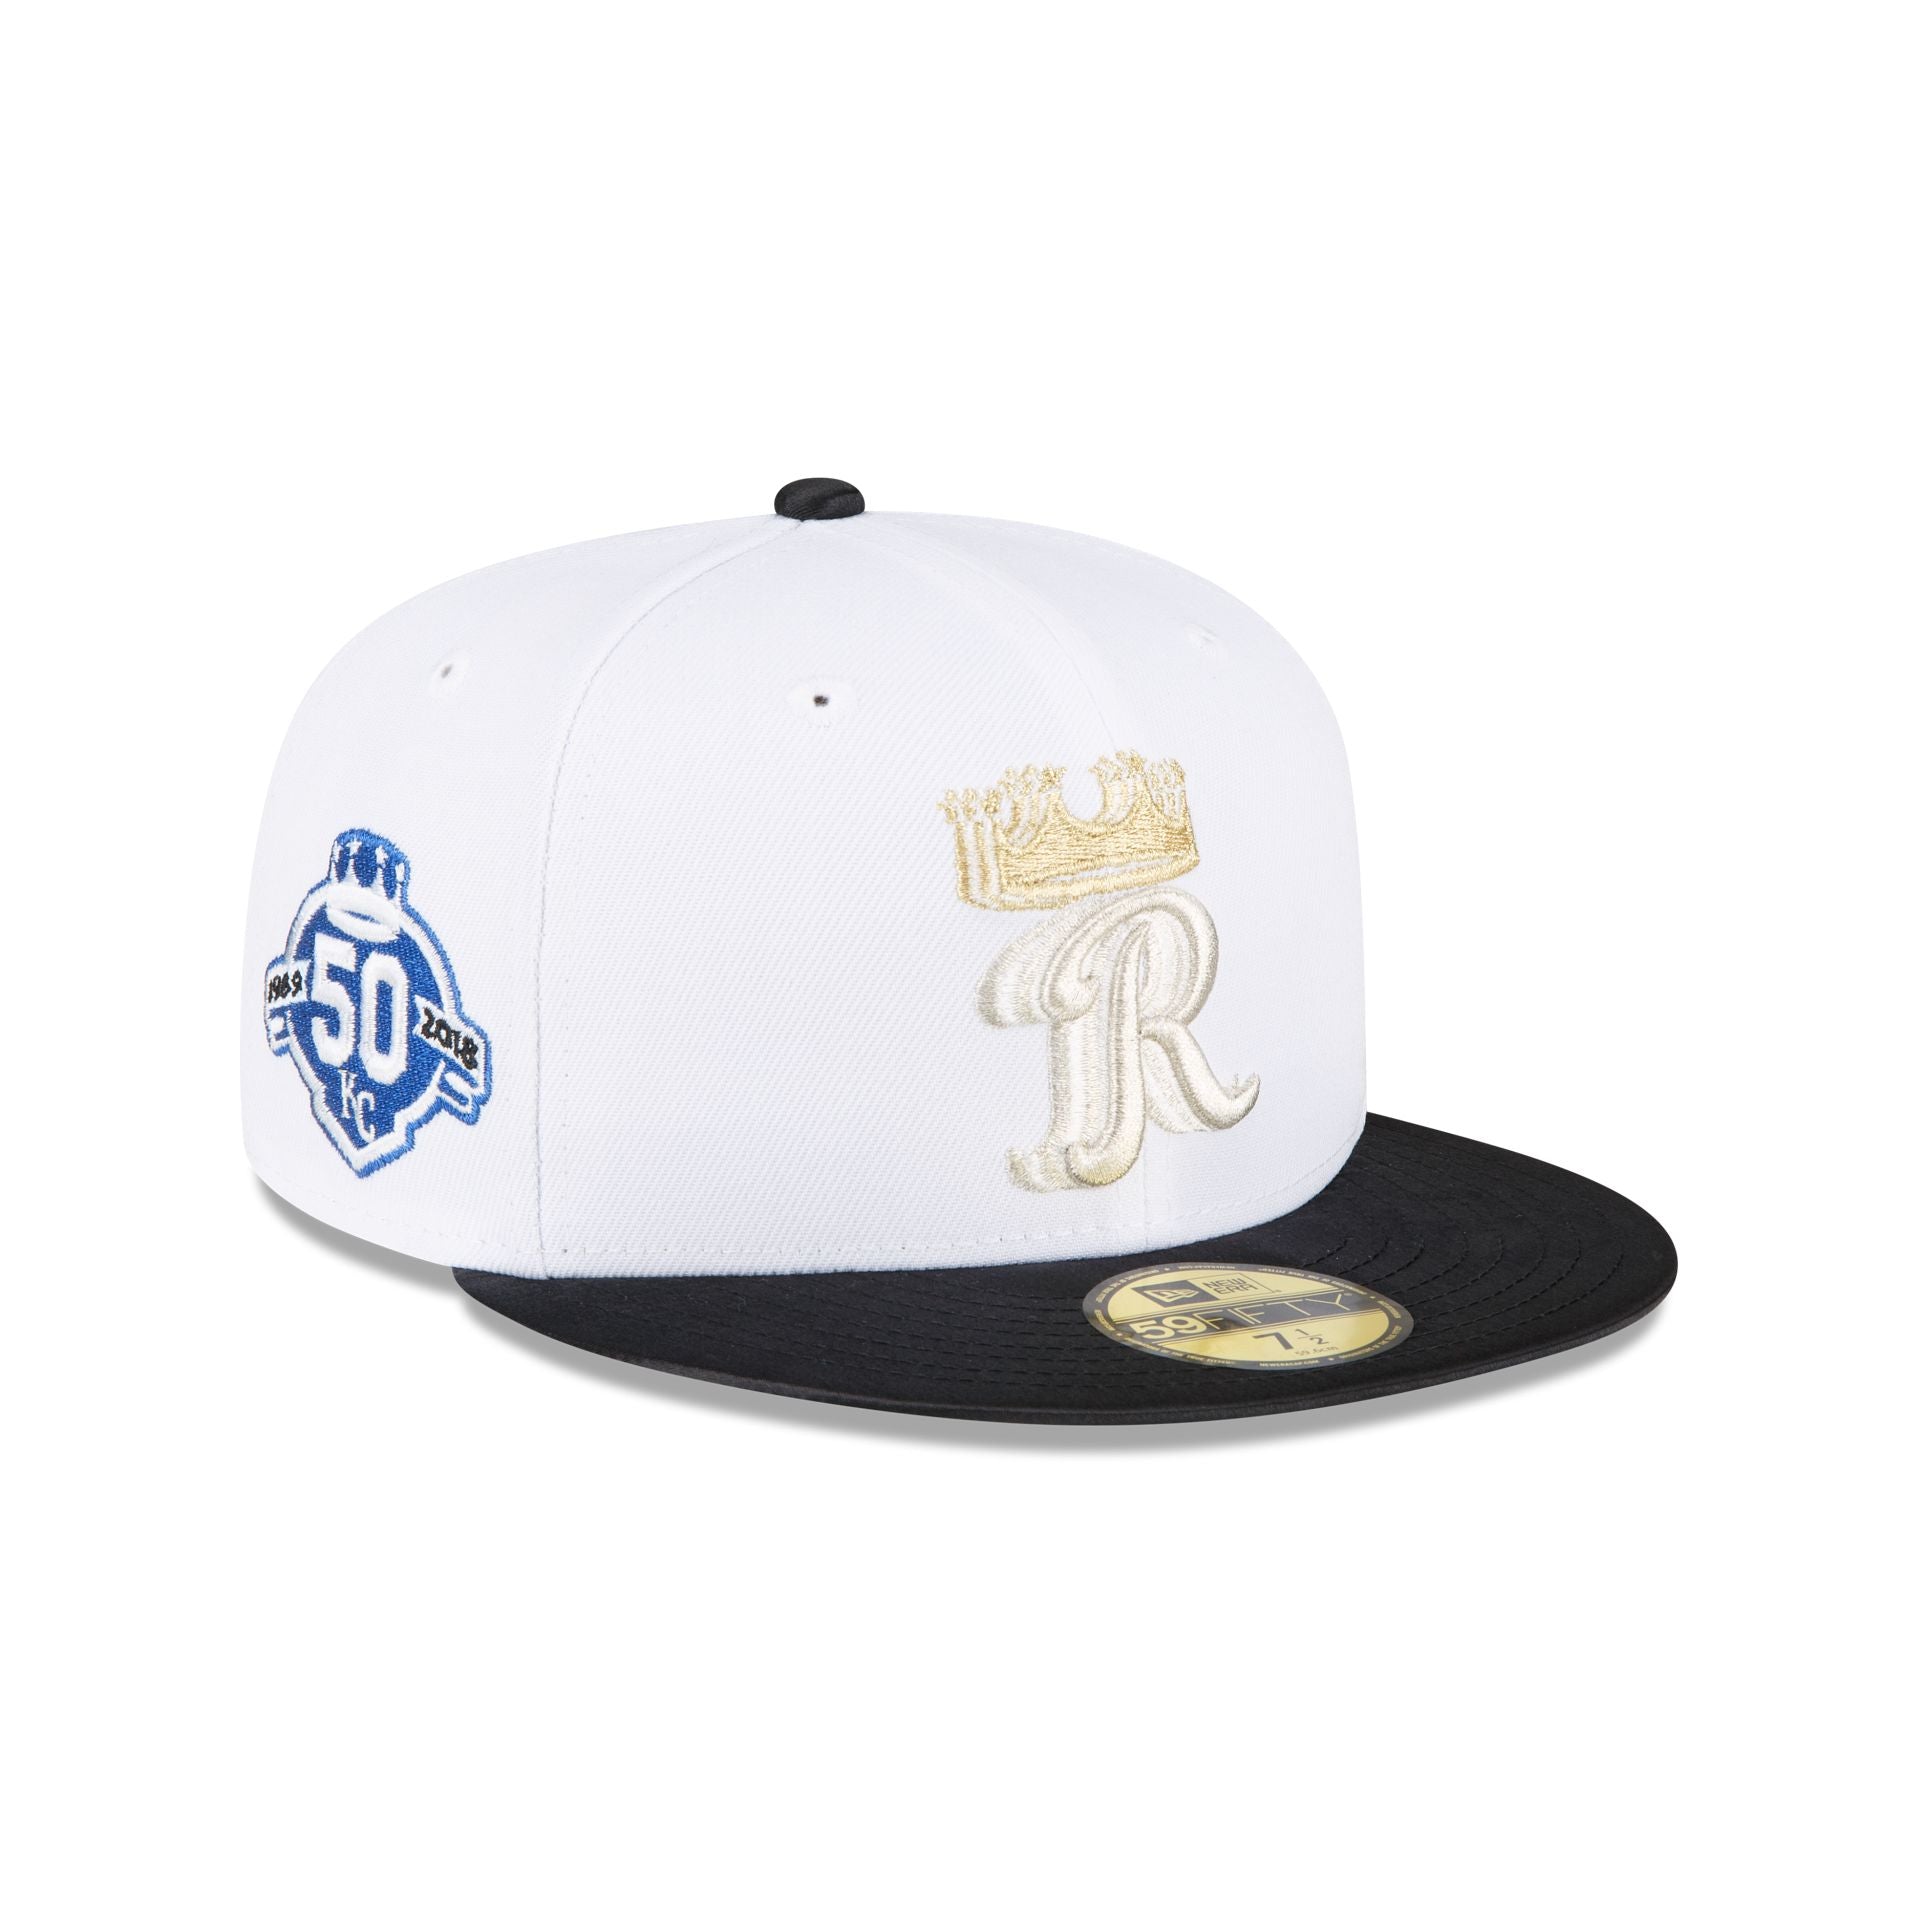 New Era Hat - Kansas City Royals - All White 7 5/8 / White